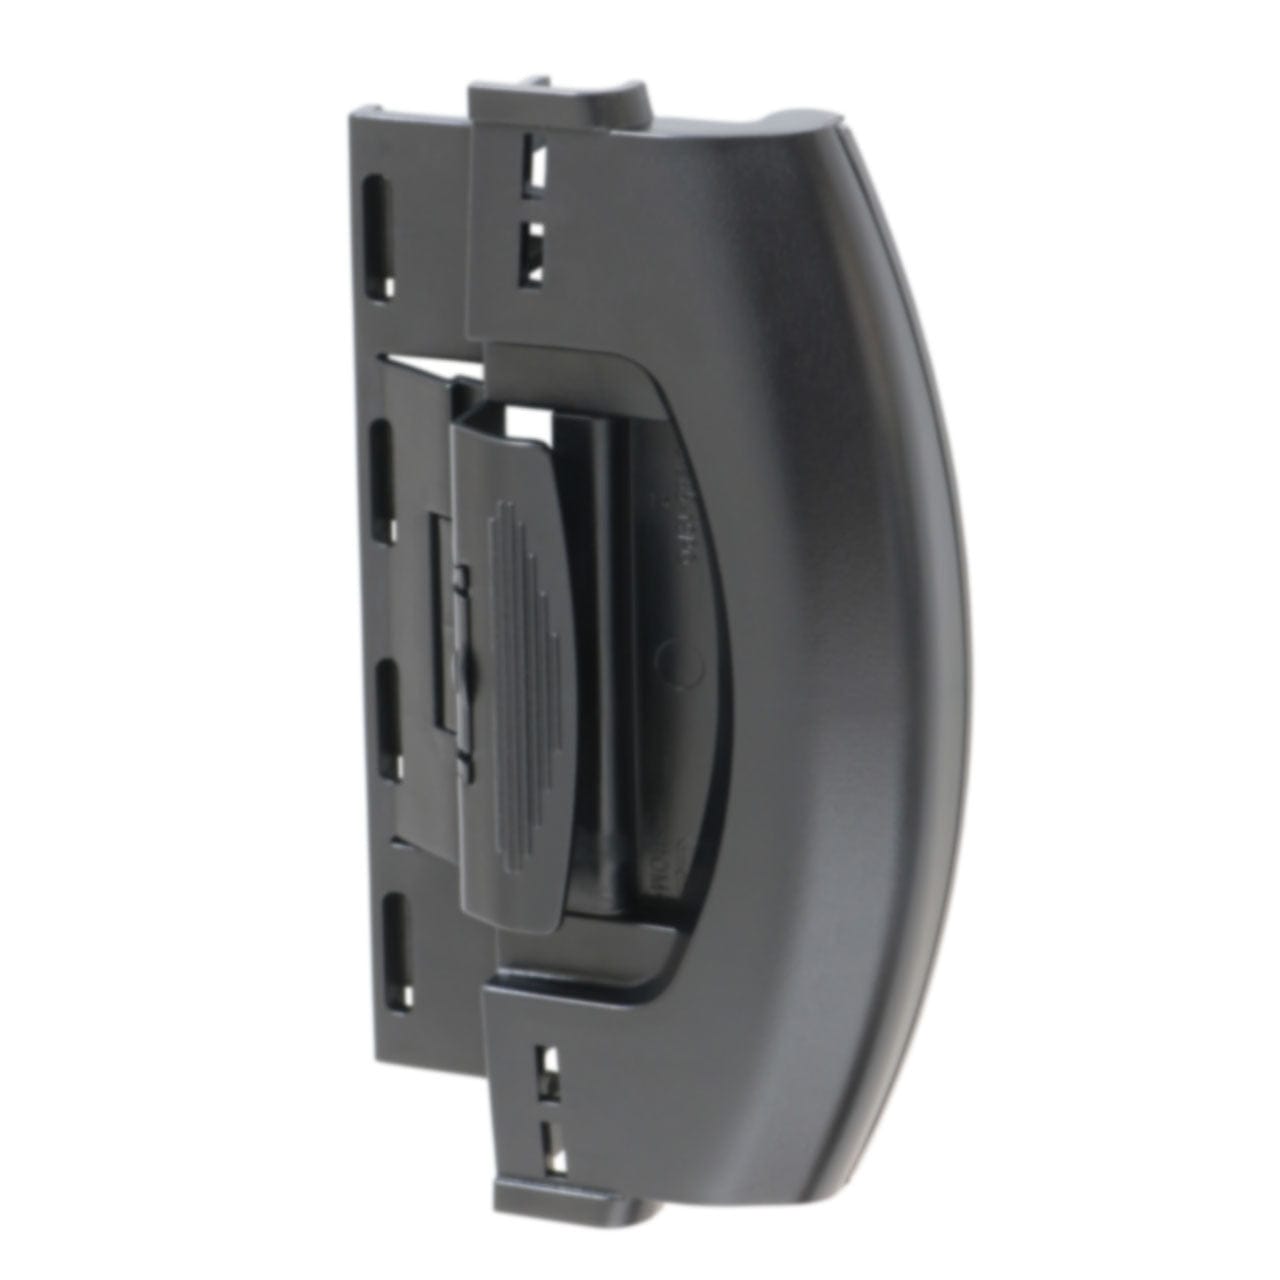 Dometic 4450018323 RV Refrigerator Door Handle Replacement for DMR702, Black